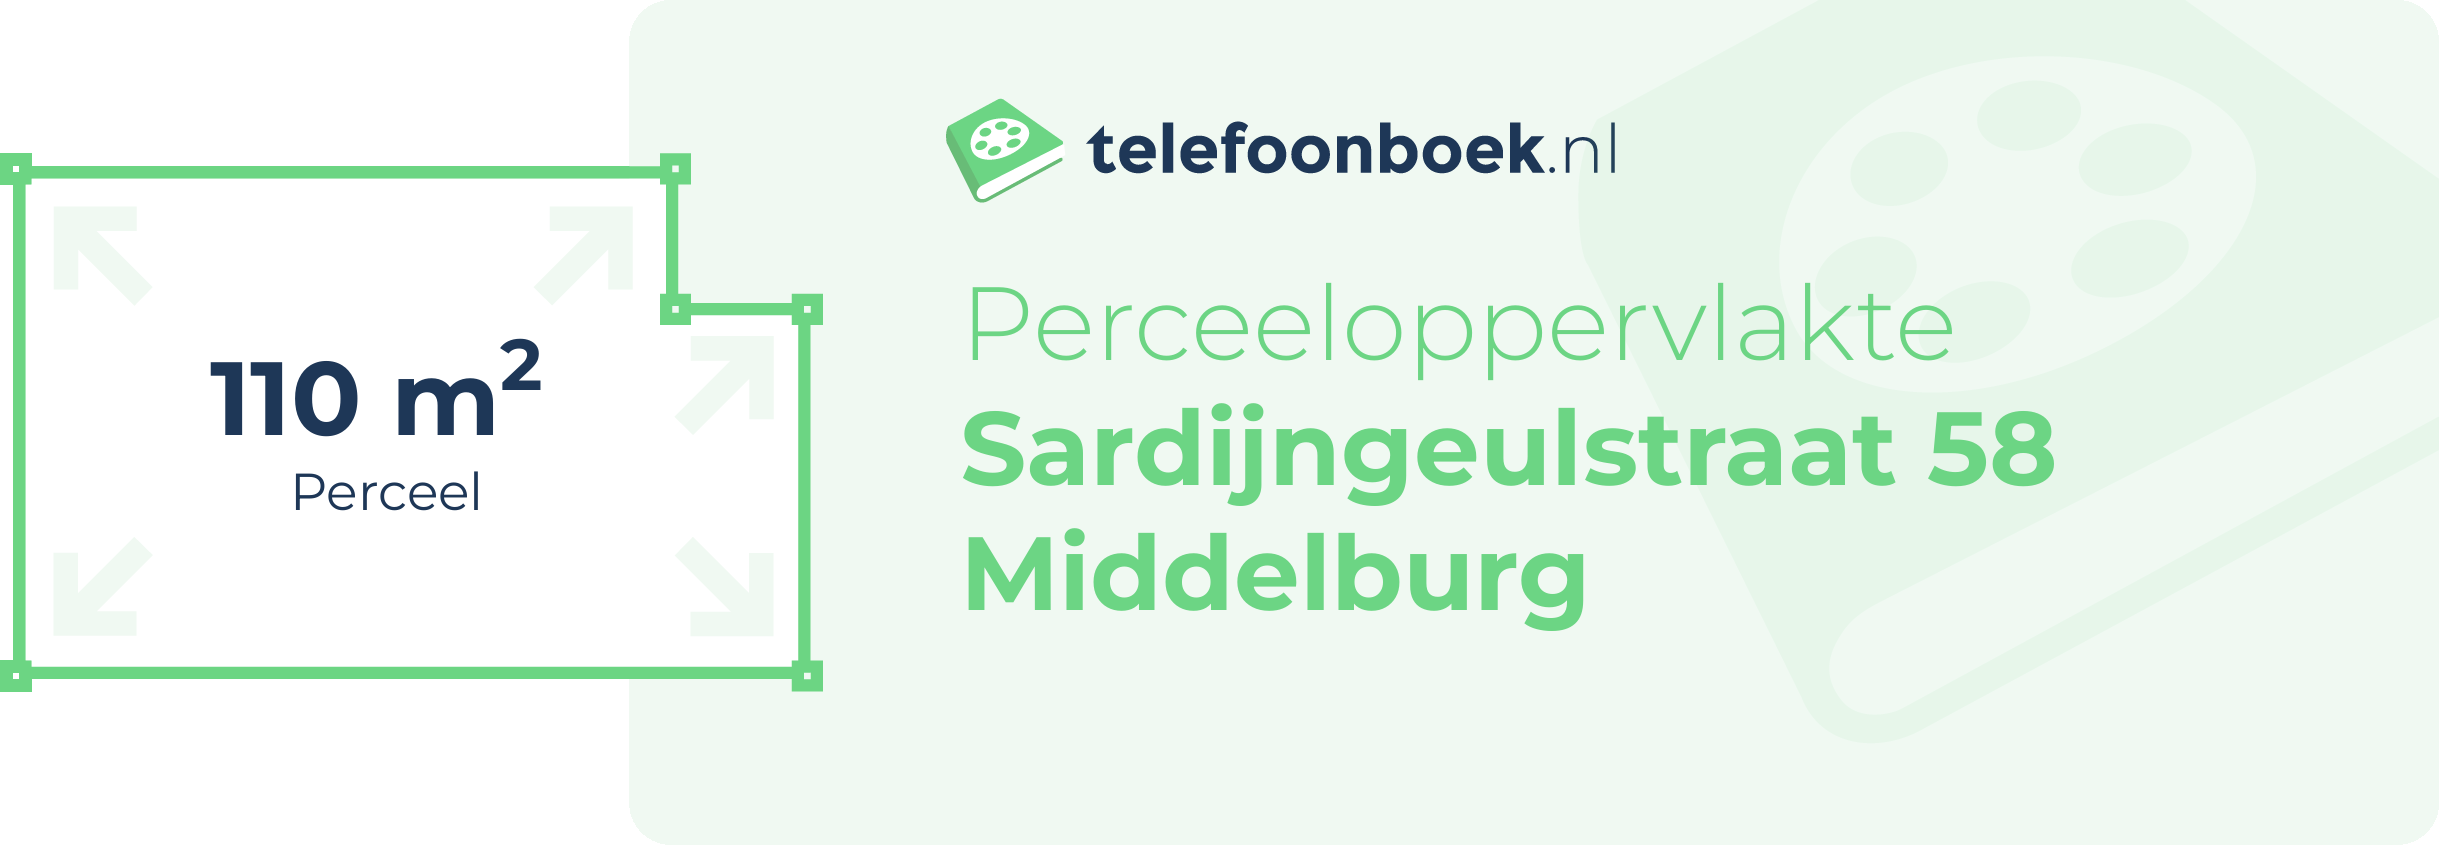 Perceeloppervlakte Sardijngeulstraat 58 Middelburg